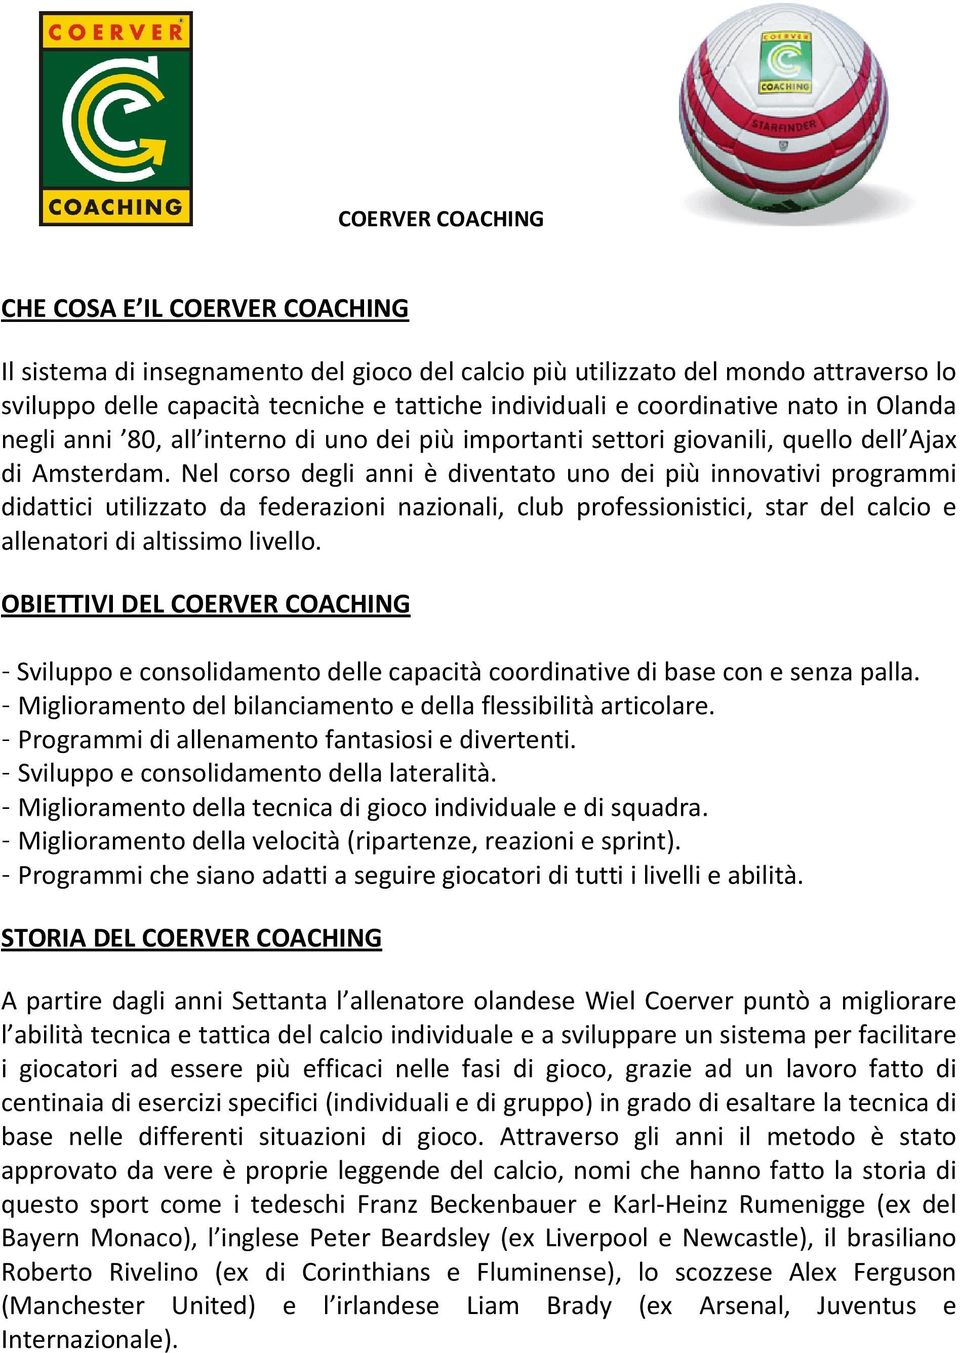 Che Cosa E Il Coerver Coaching Pdf Download Gratuito